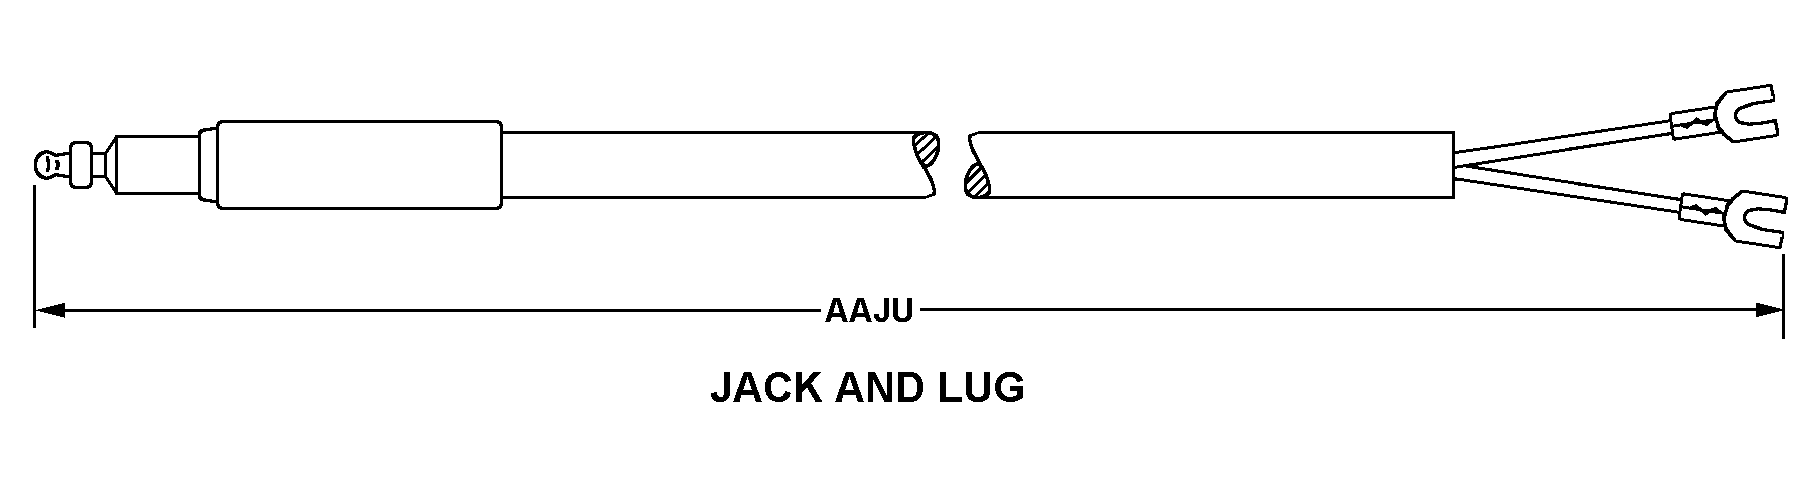 JACK AND LUG style nsn 5995-01-264-1270